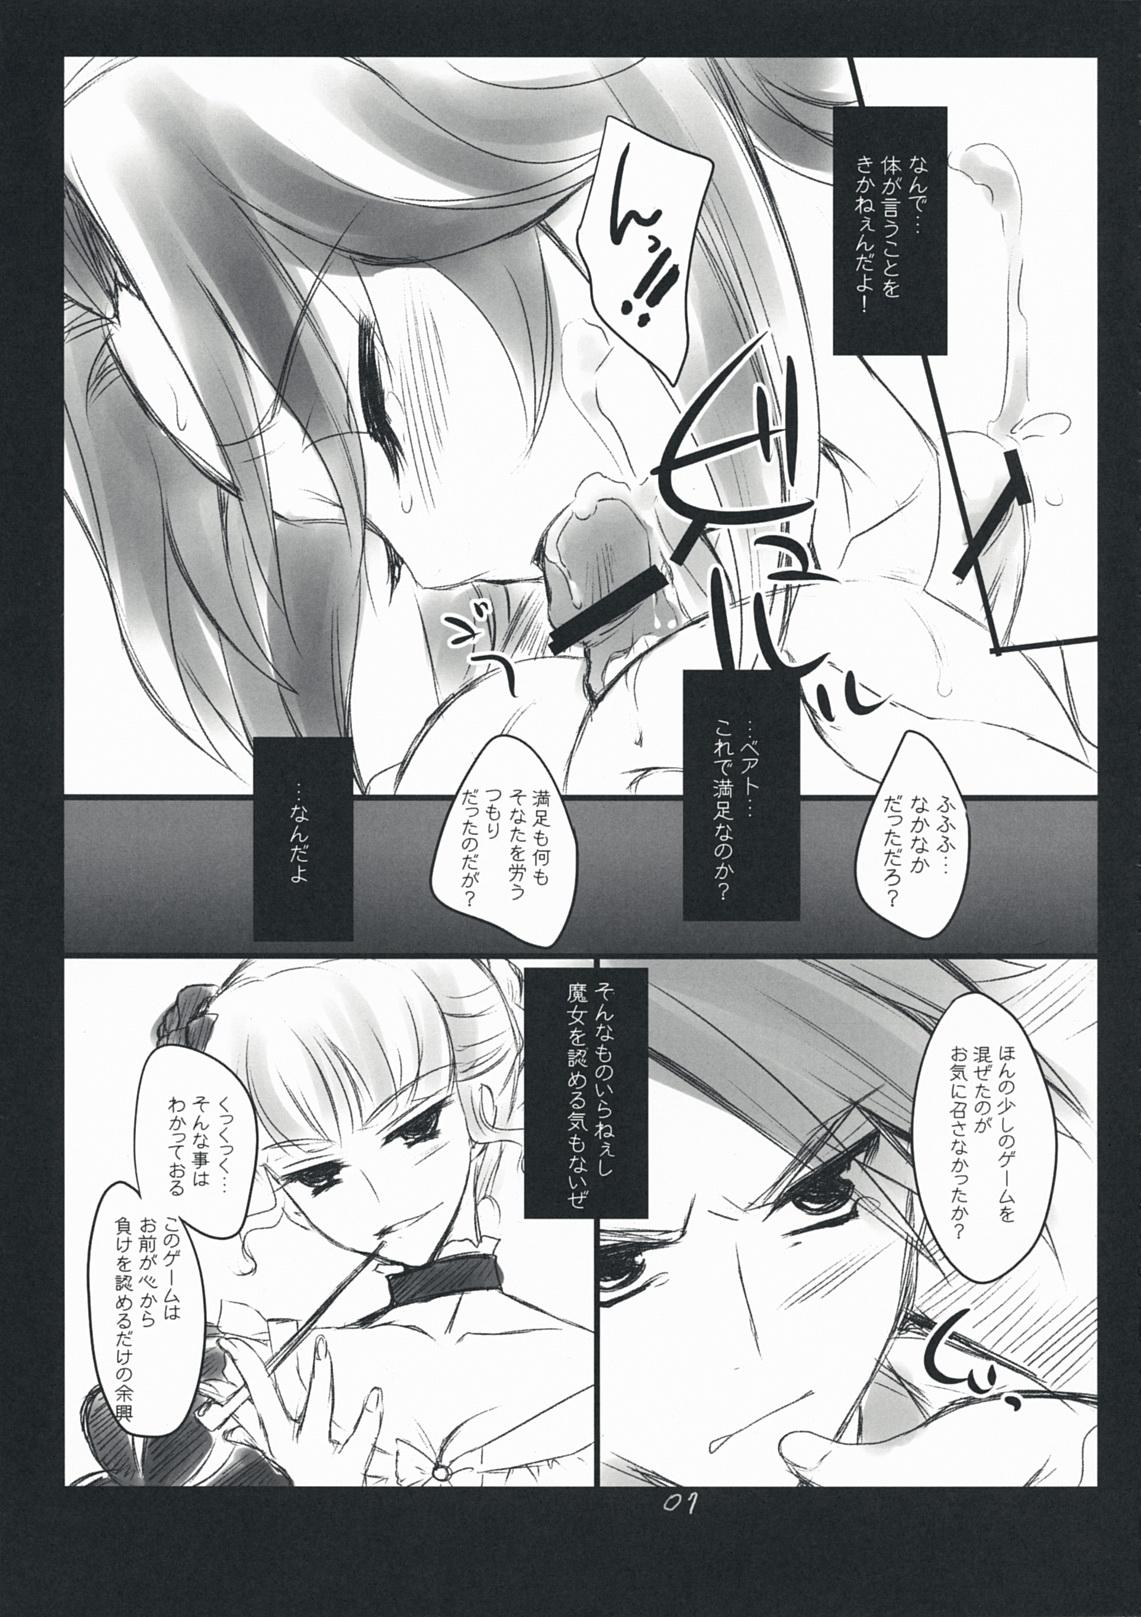 Cream Pie The Queen Of Nightmare - Umineko no naku koro ni Pendeja - Page 7